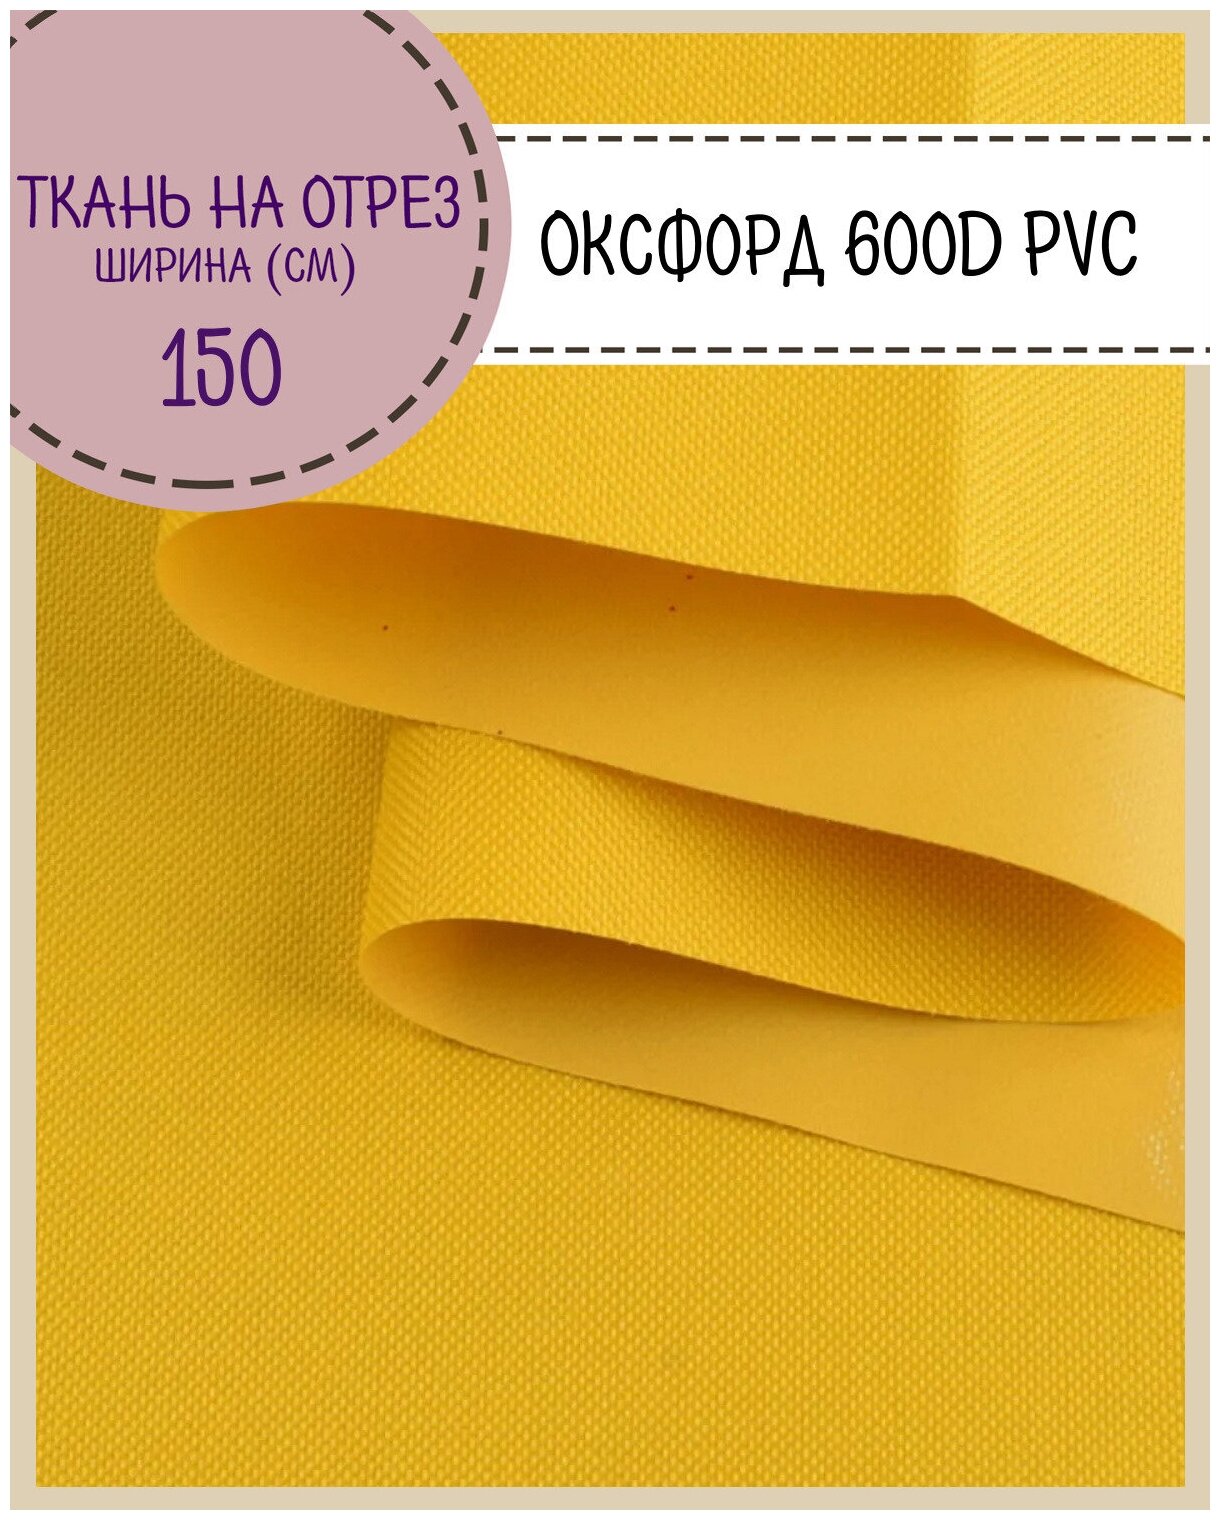 Ткань Оксфорд 600D PVC (ПВХ), водоотталкивающая, цв. желтый, на отрез, цена за пог. метр